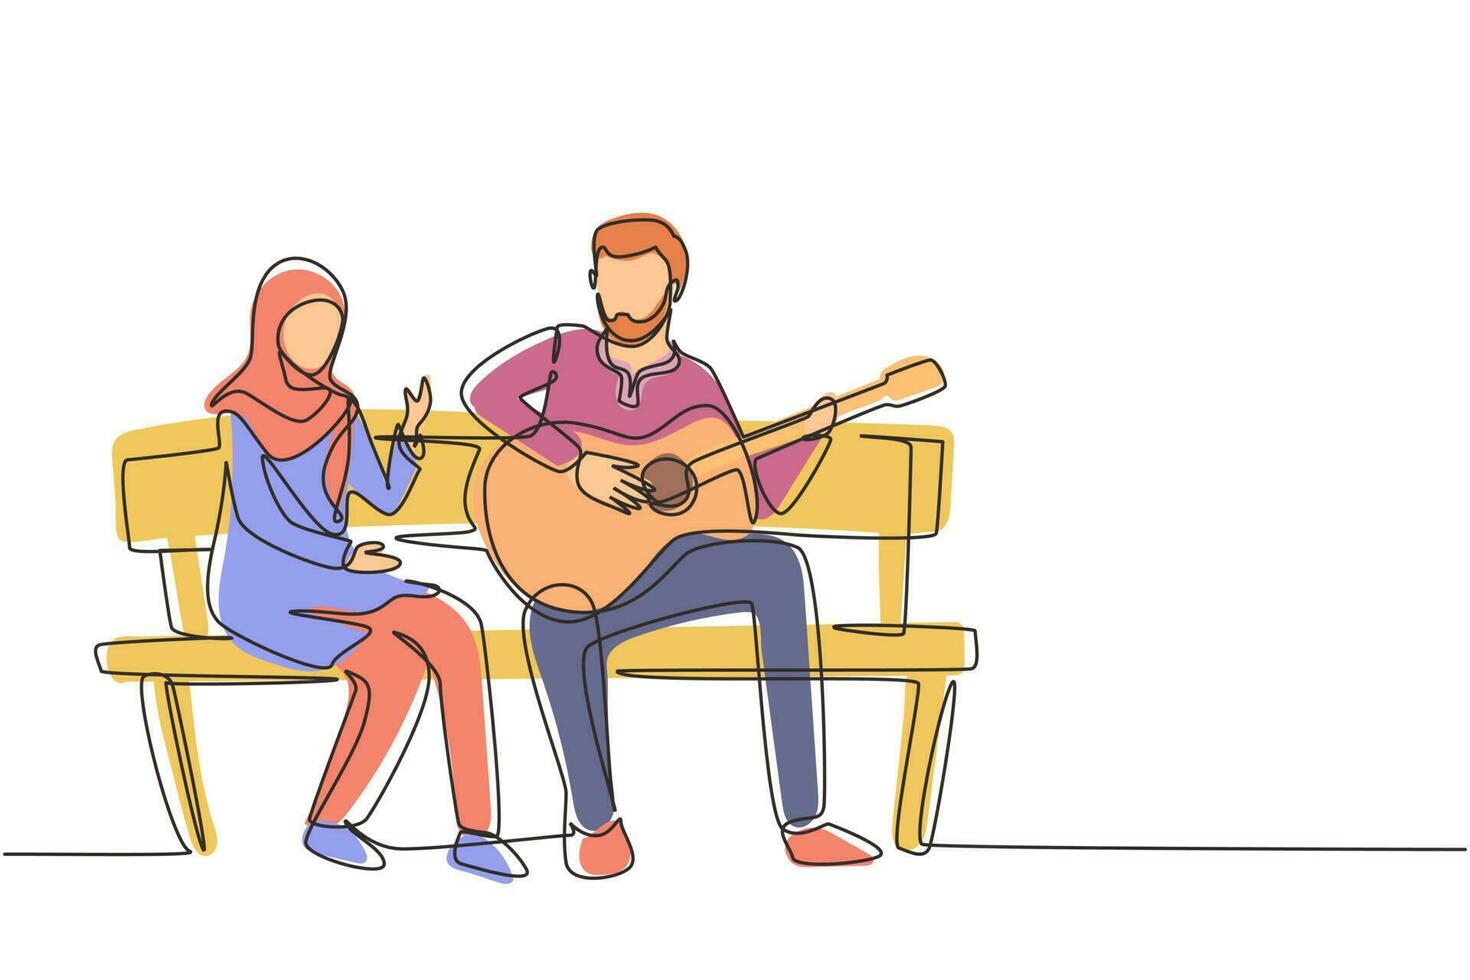 una sola línea continua dibujando personas árabes sentadas en un banco de madera en el parque. pareja en cita, hombre tocando música en guitarra, chica escuchando y cantando juntos. ilustración de vector gráfico de dibujo de una línea